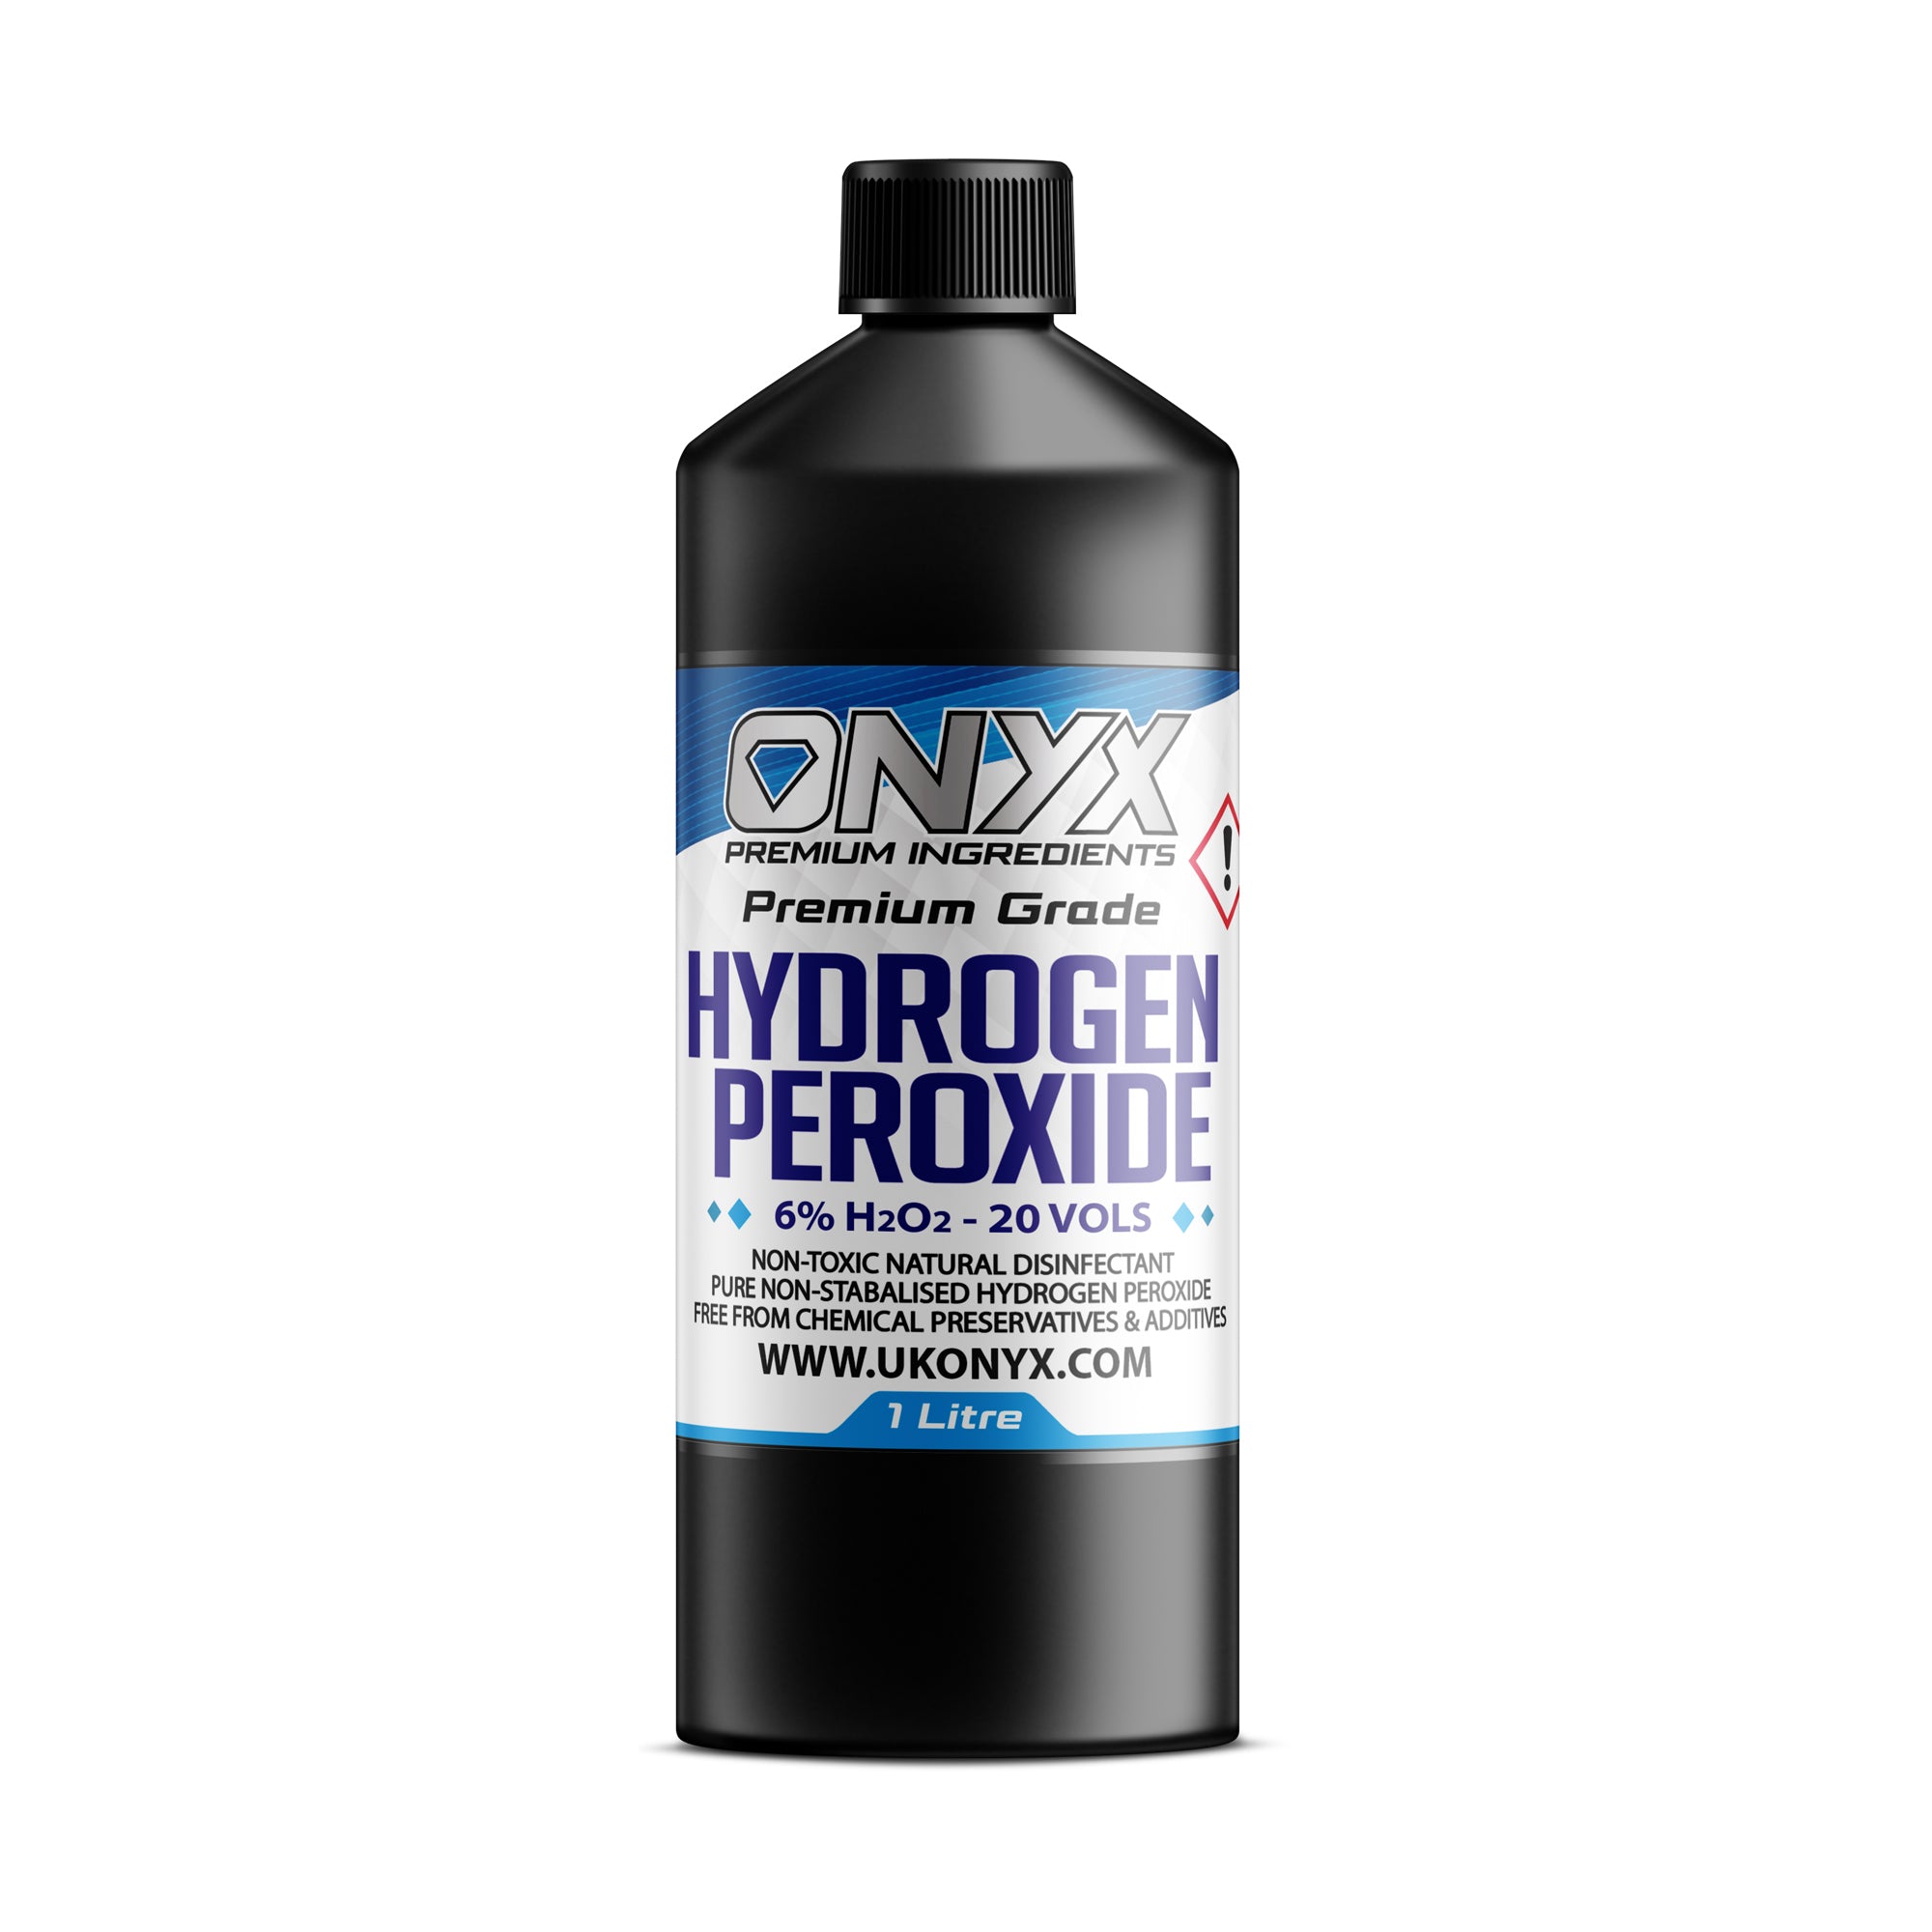 Hydrogen Peroxide Pure Food Grade 6%, 20 Vols. Non-Toxic Natural Disinfectant